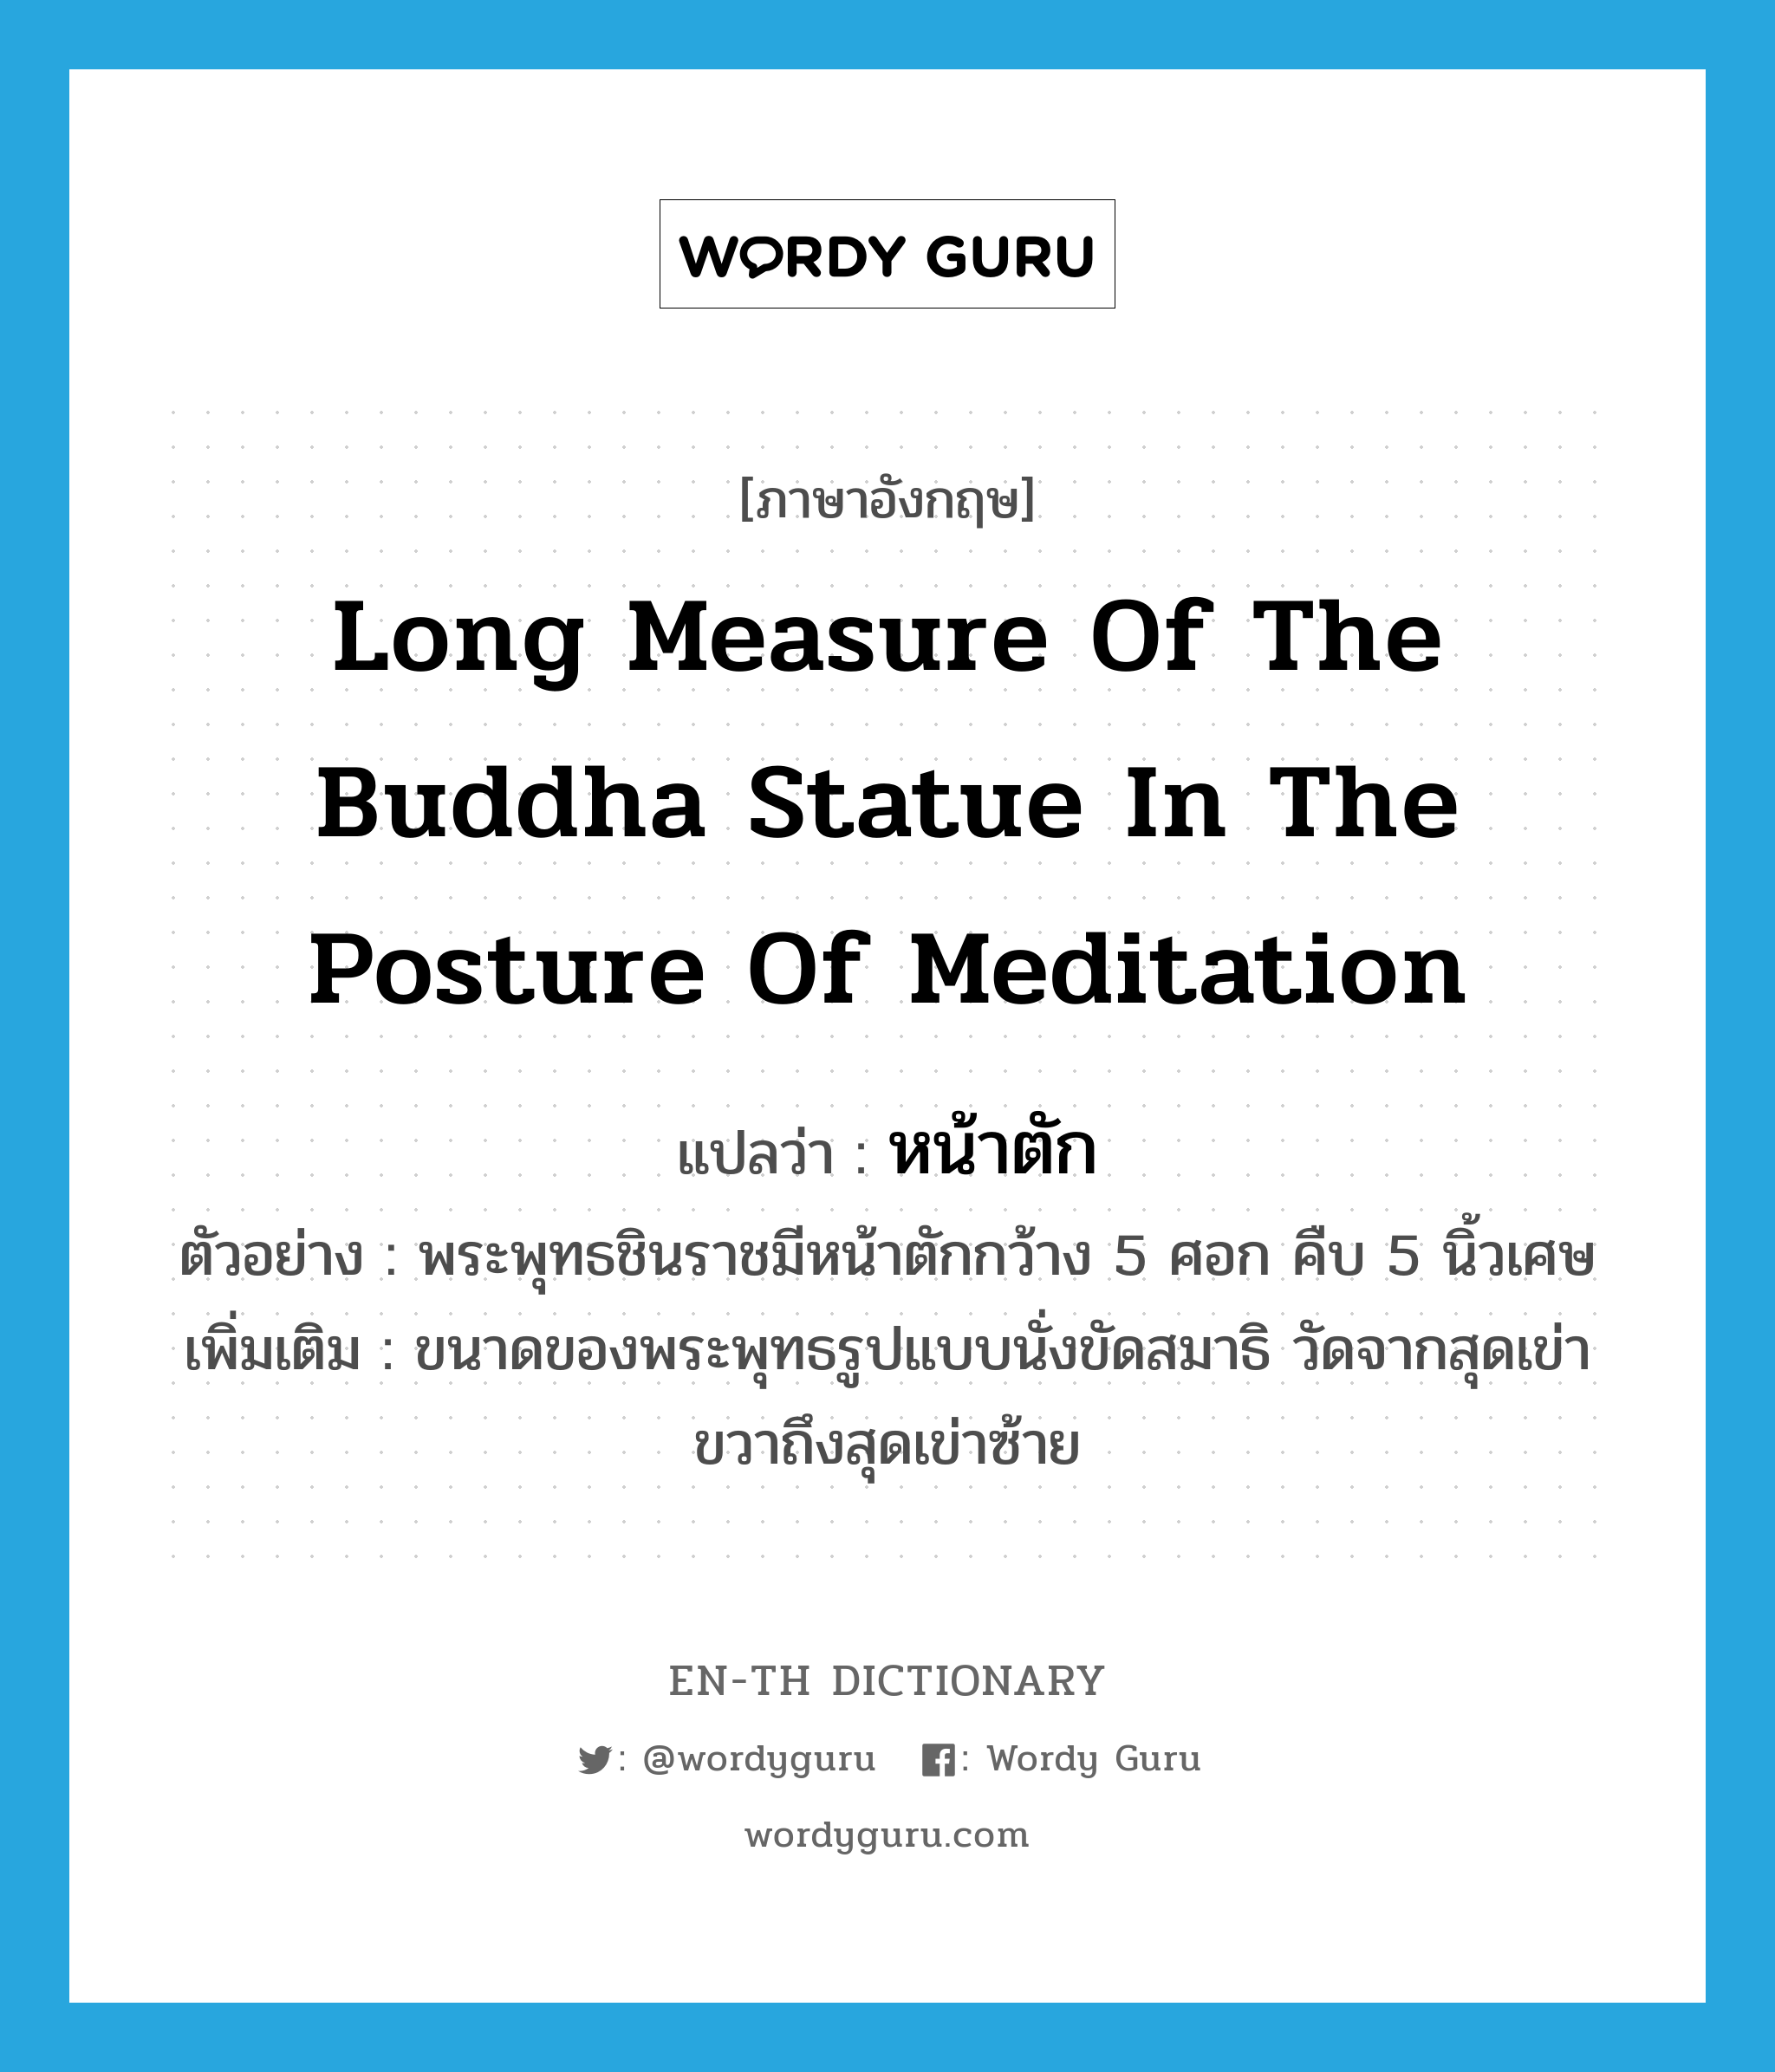 หน้าตัก ภาษาอังกฤษ?, คำศัพท์ภาษาอังกฤษ หน้าตัก แปลว่า long measure of the Buddha statue in the posture of meditation ประเภท N ตัวอย่าง พระพุทธชินราชมีหน้าตักกว้าง 5 ศอก คืบ 5 นิ้วเศษ เพิ่มเติม ขนาดของพระพุทธรูปแบบนั่งขัดสมาธิ วัดจากสุดเข่าขวาถึงสุดเข่าซ้าย หมวด N